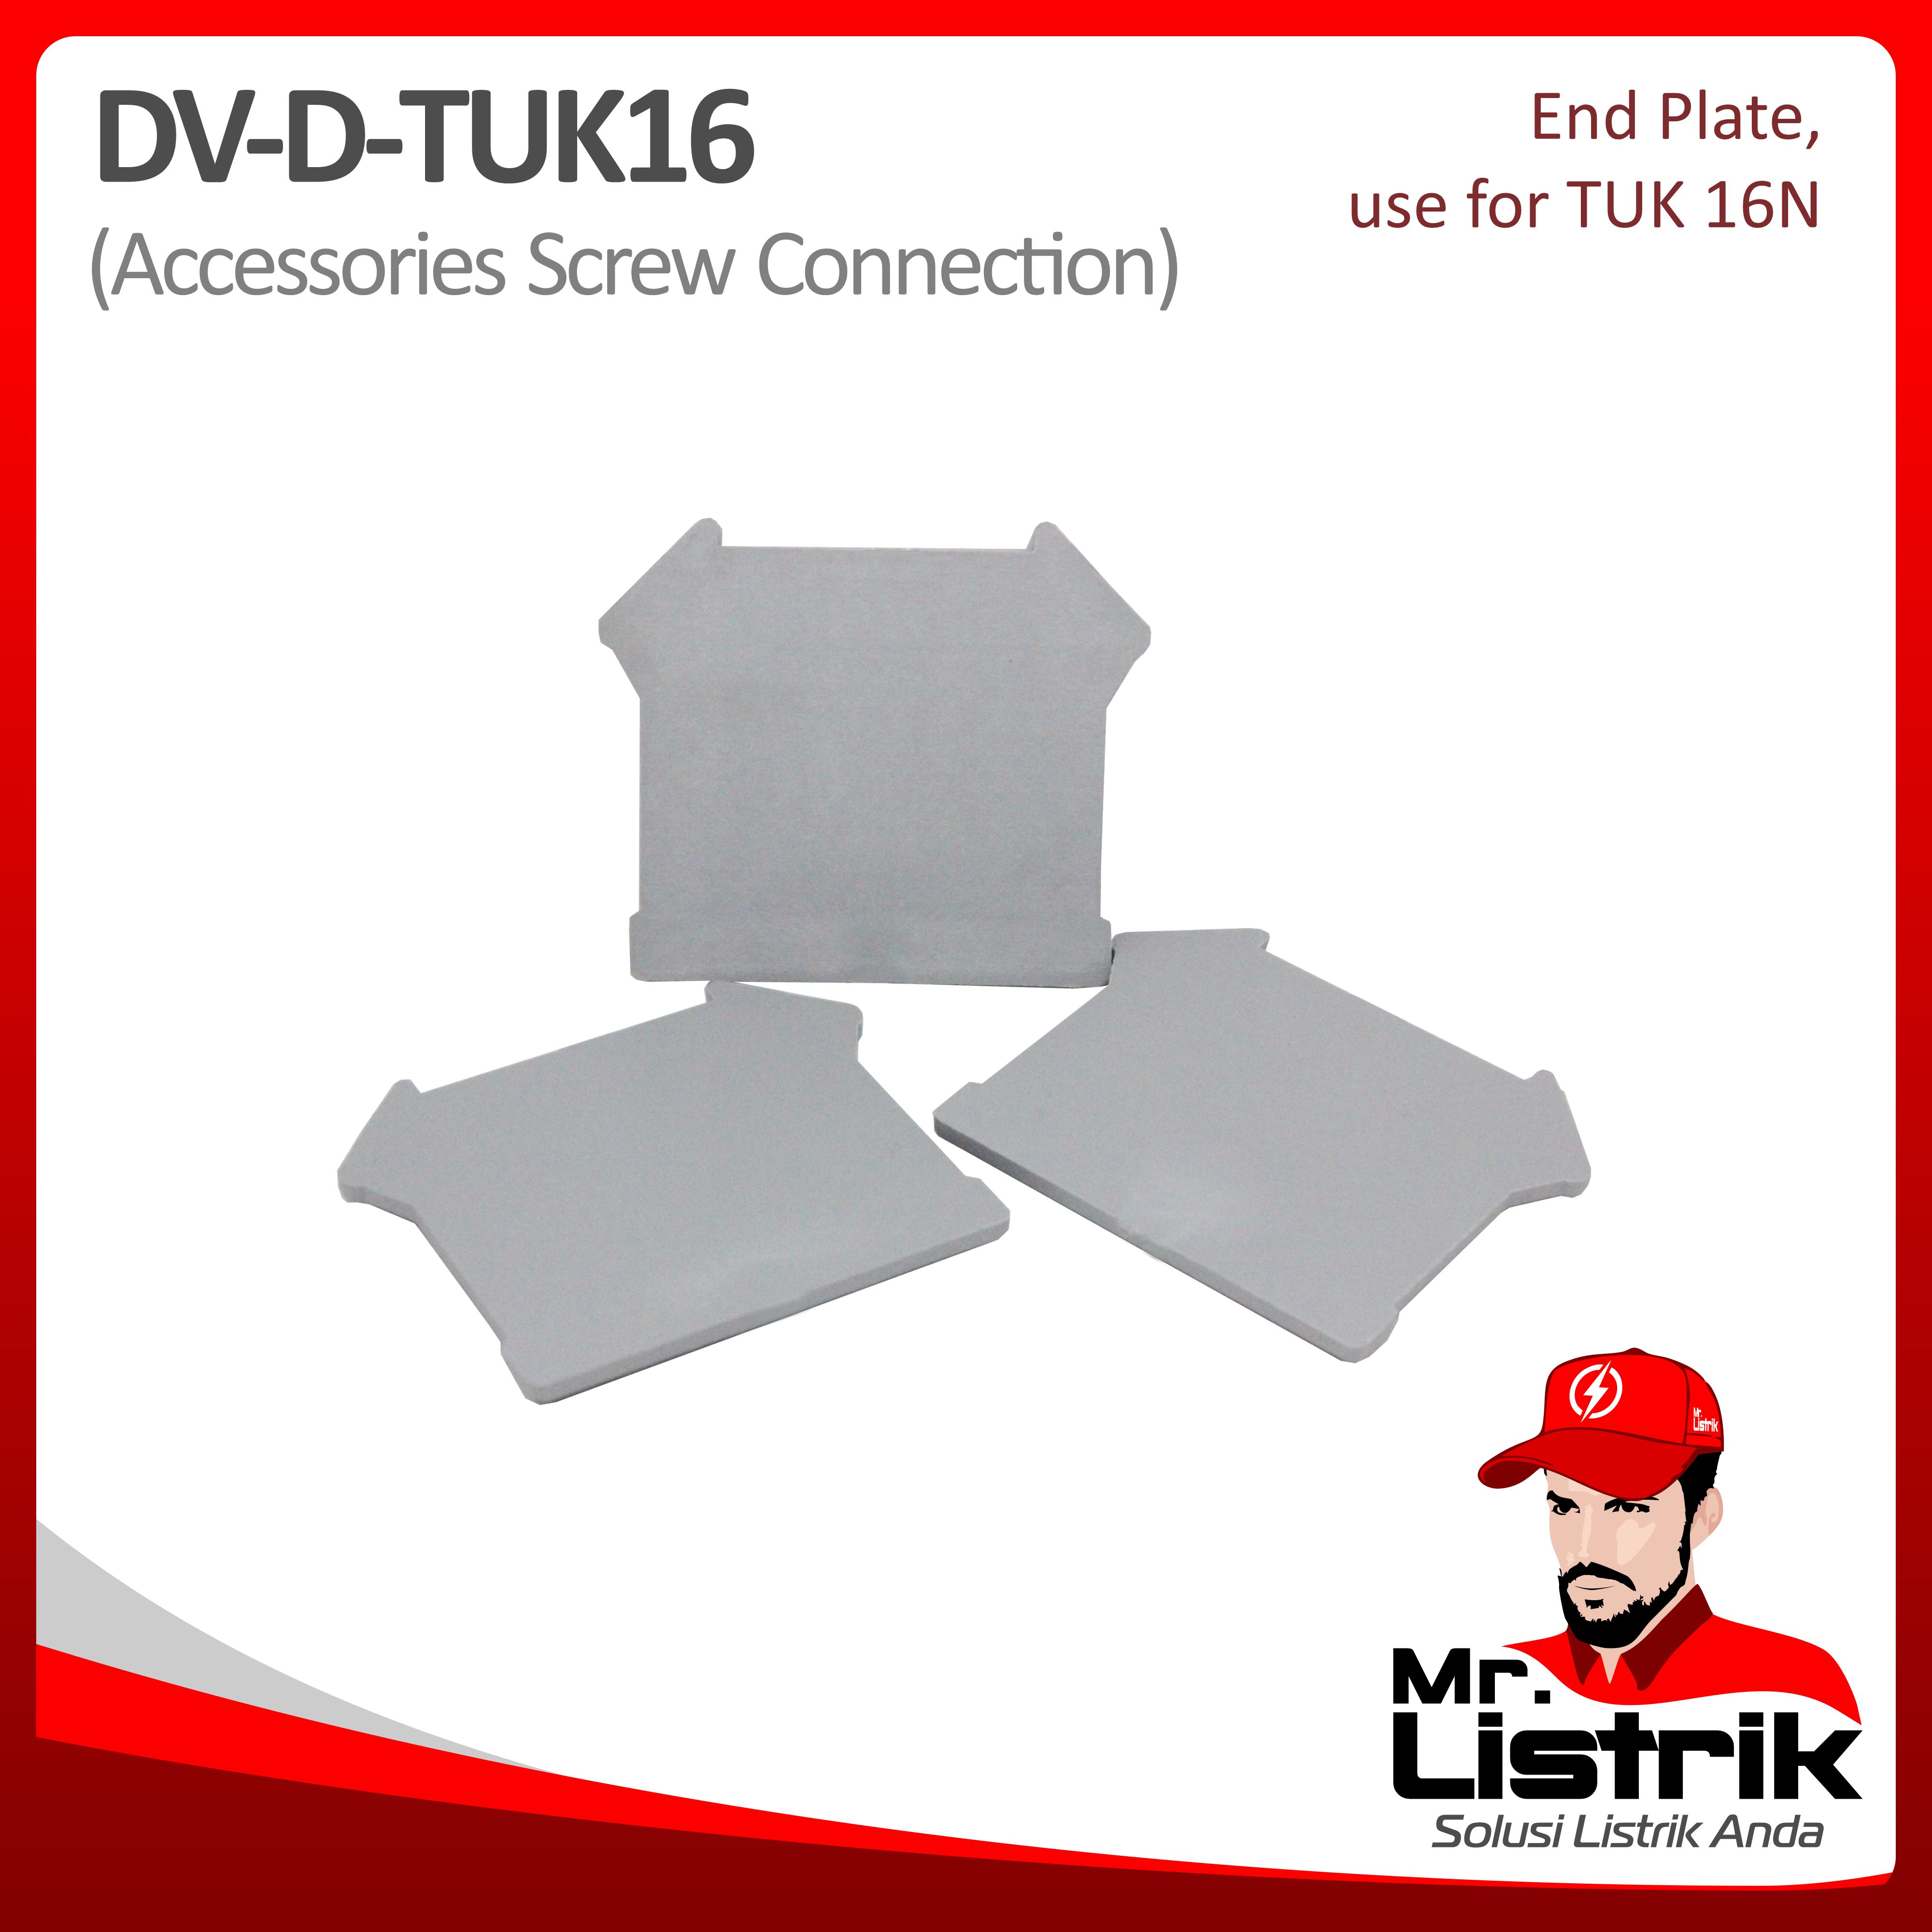 End Plate For TUK16 DV D-TUK16